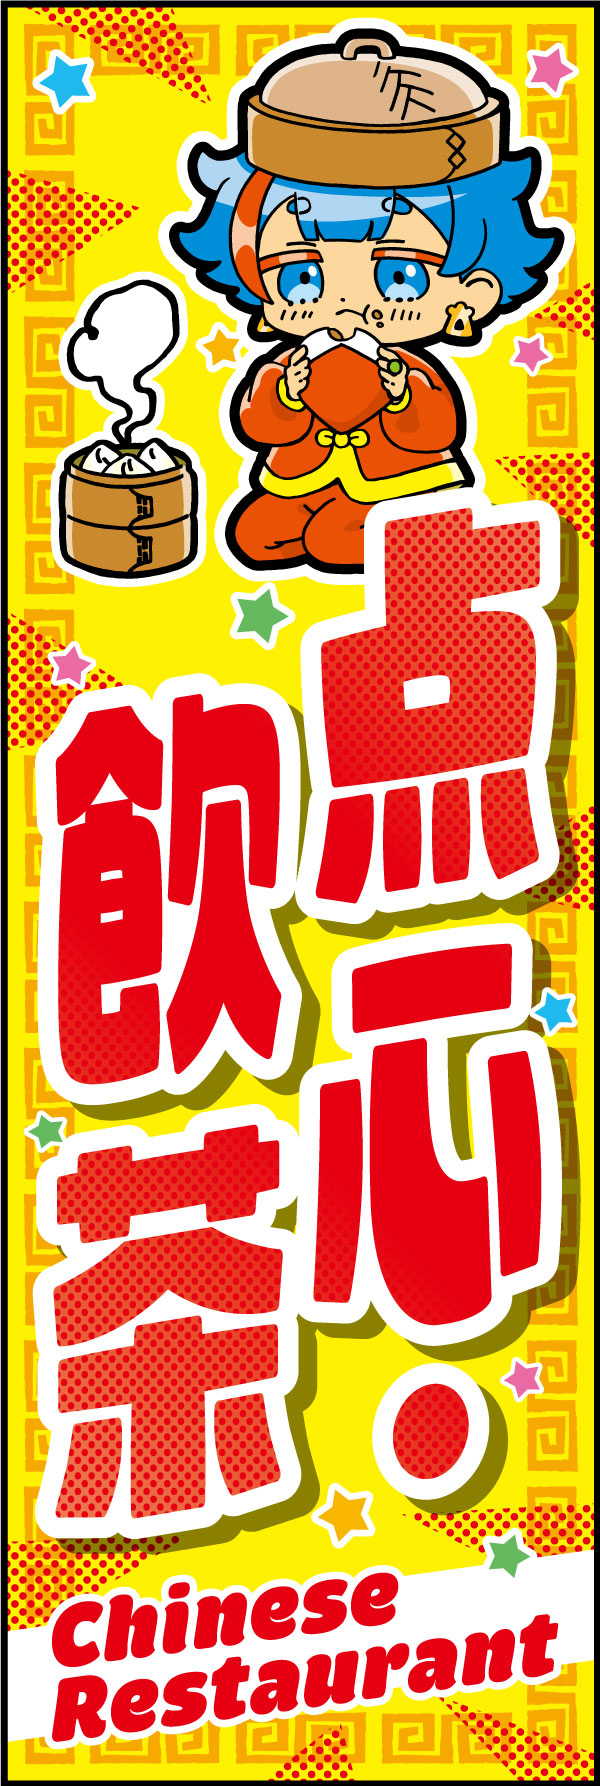 点心・飲茶 170_01「点心・飲茶」のぼりです。「KAWAII」キャラクターと下部の英訳で訪日外国人の方々にアピールできます。（D.N） 